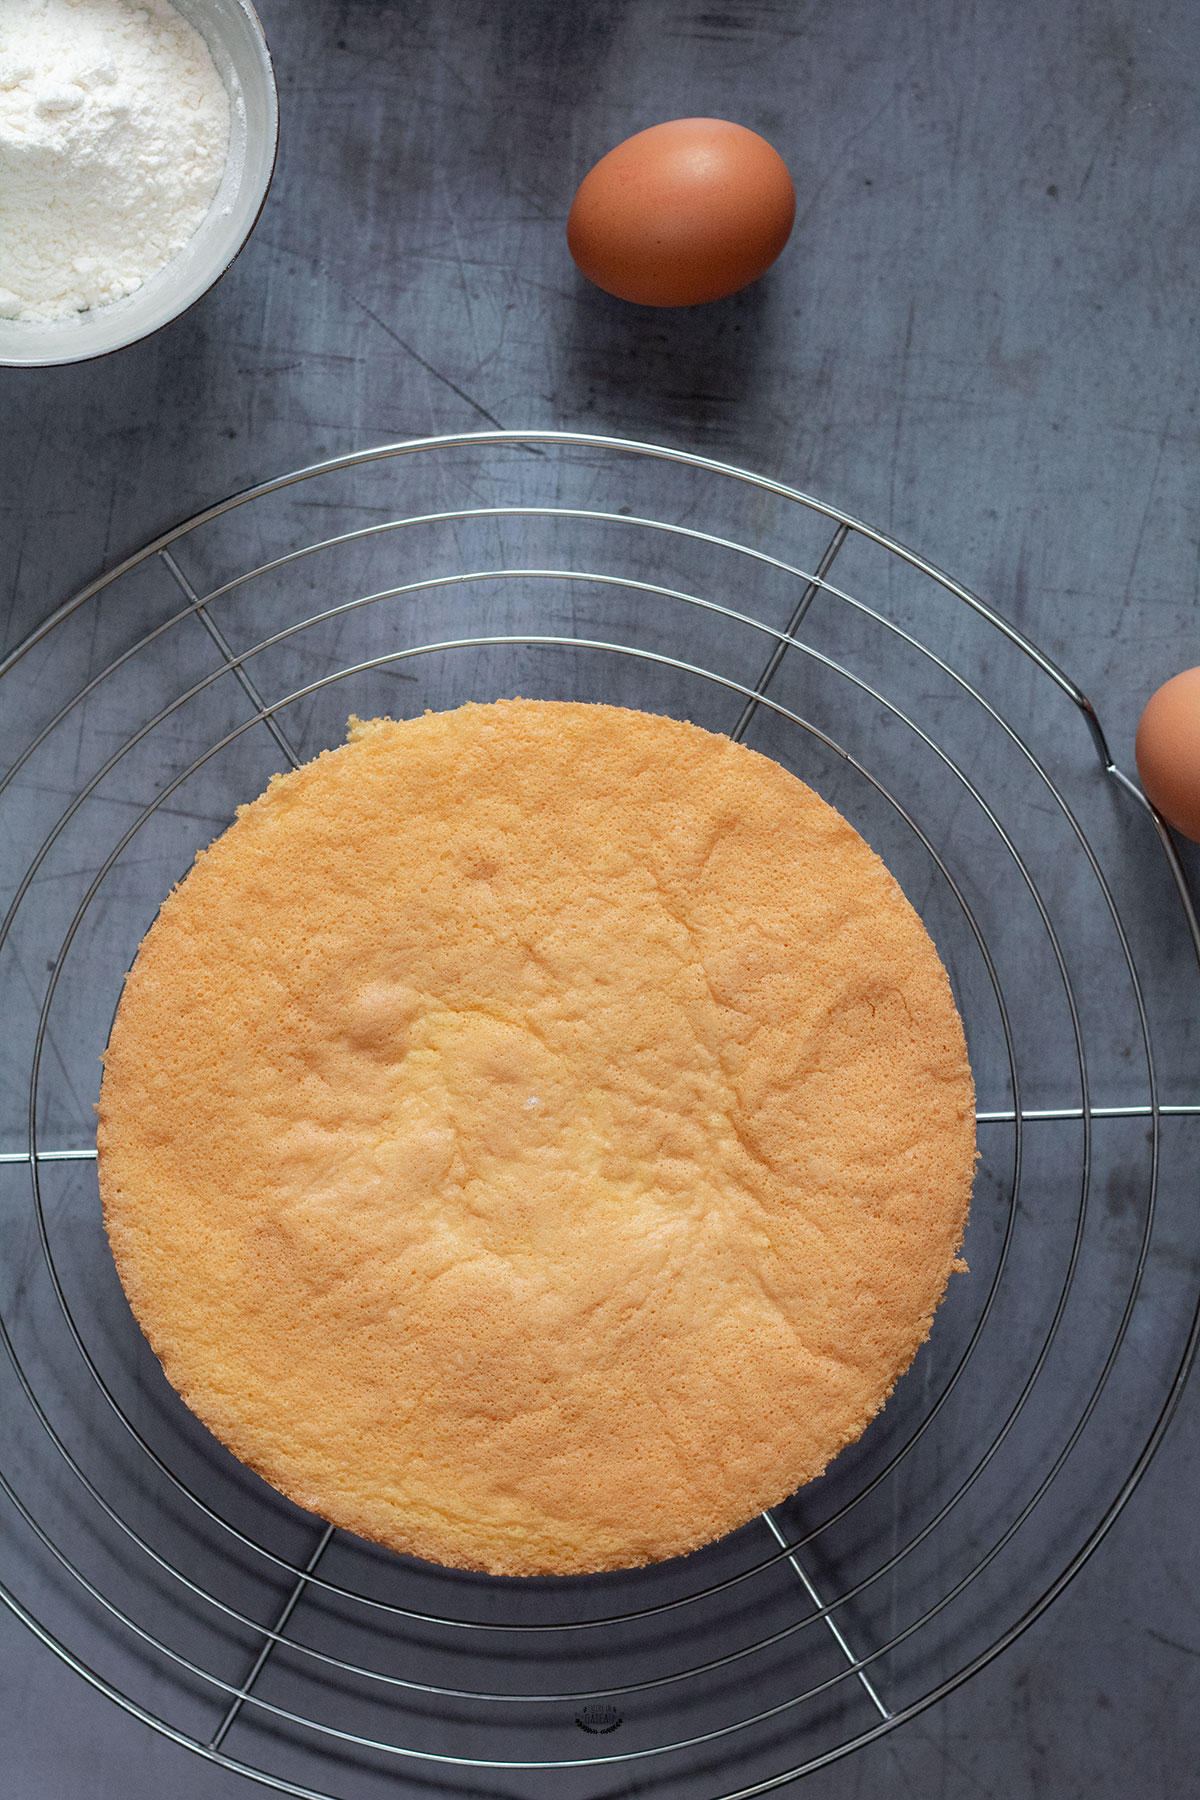 Fiche technique pâtisserie : qu'est-ce que c'est et à quoi ça sert ?